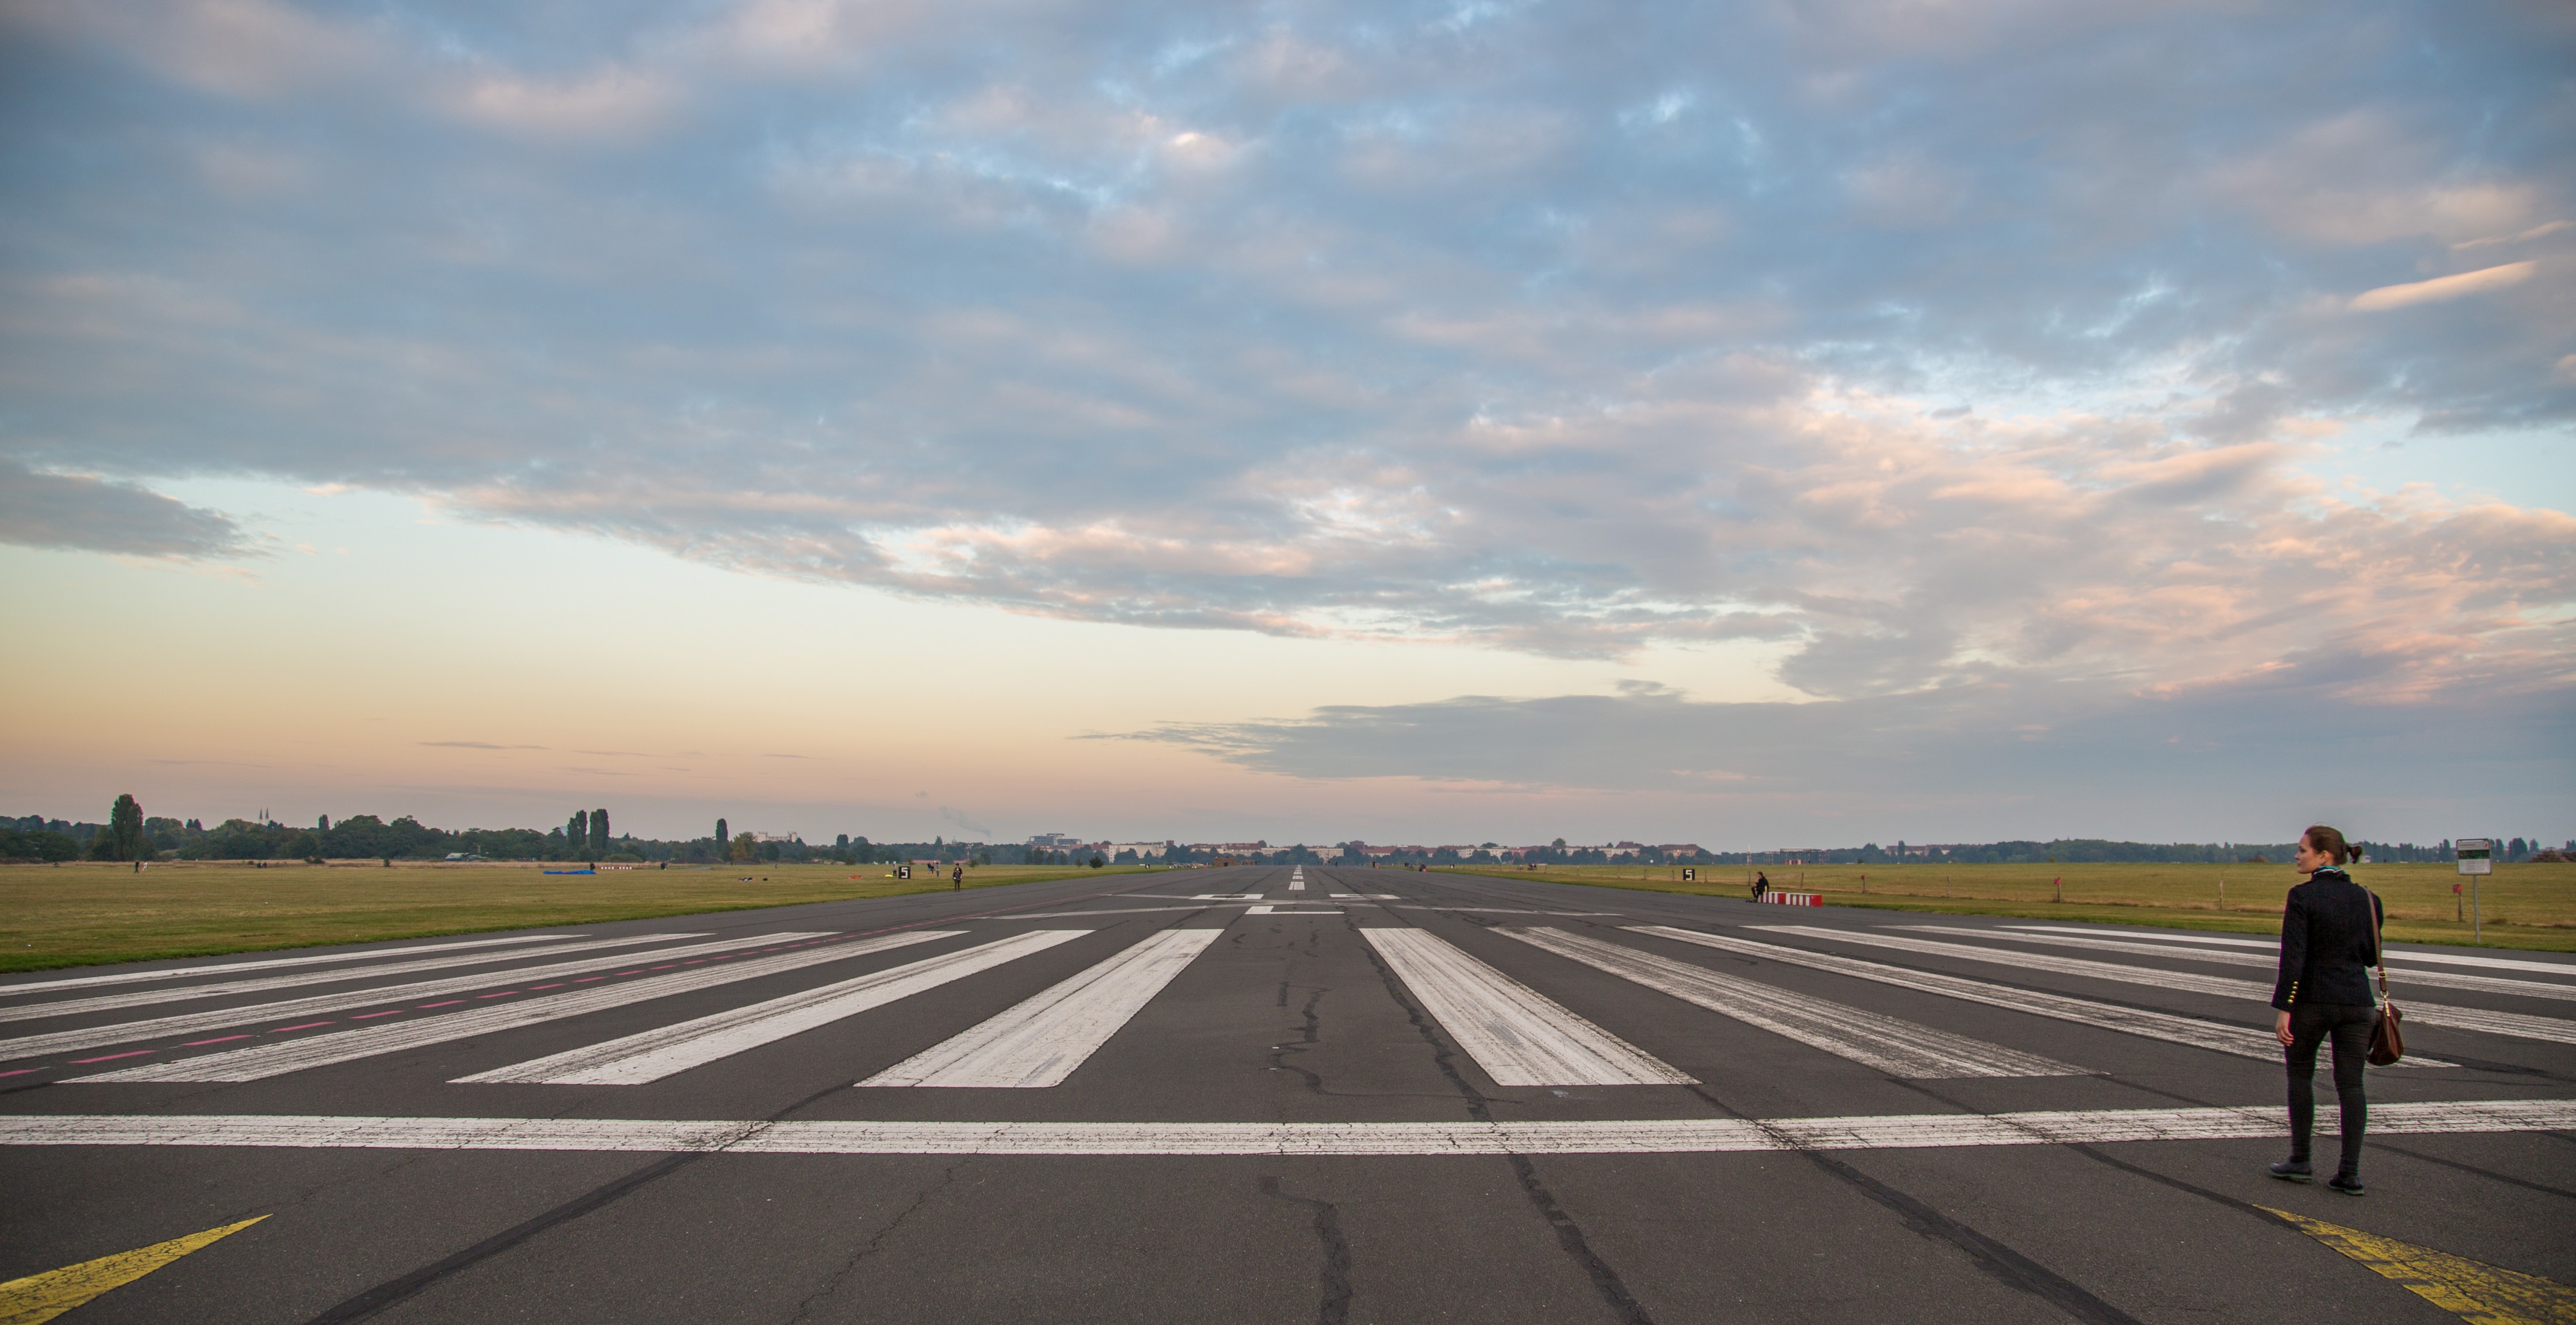 Berlin Tempelhof Airport Runway 09L - Tempelhofer Feld (15159356029)